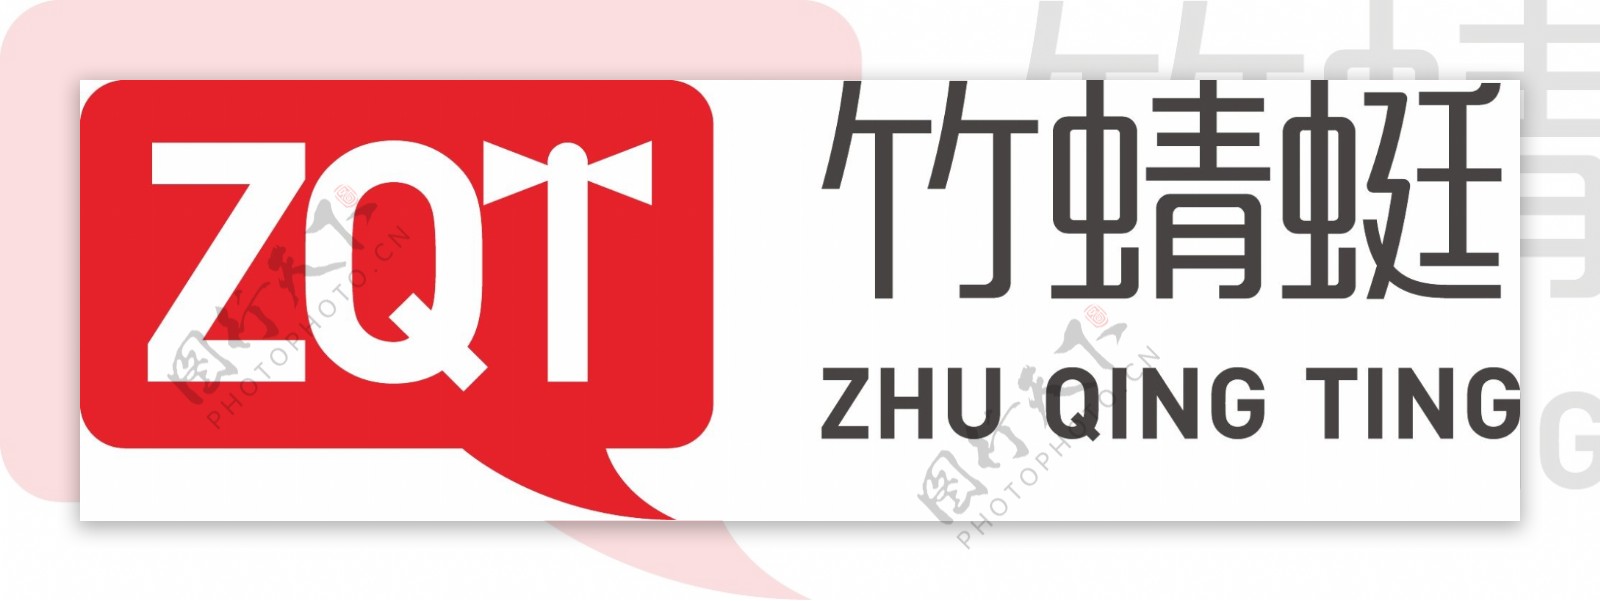 竹蜻蜓商标logo设计